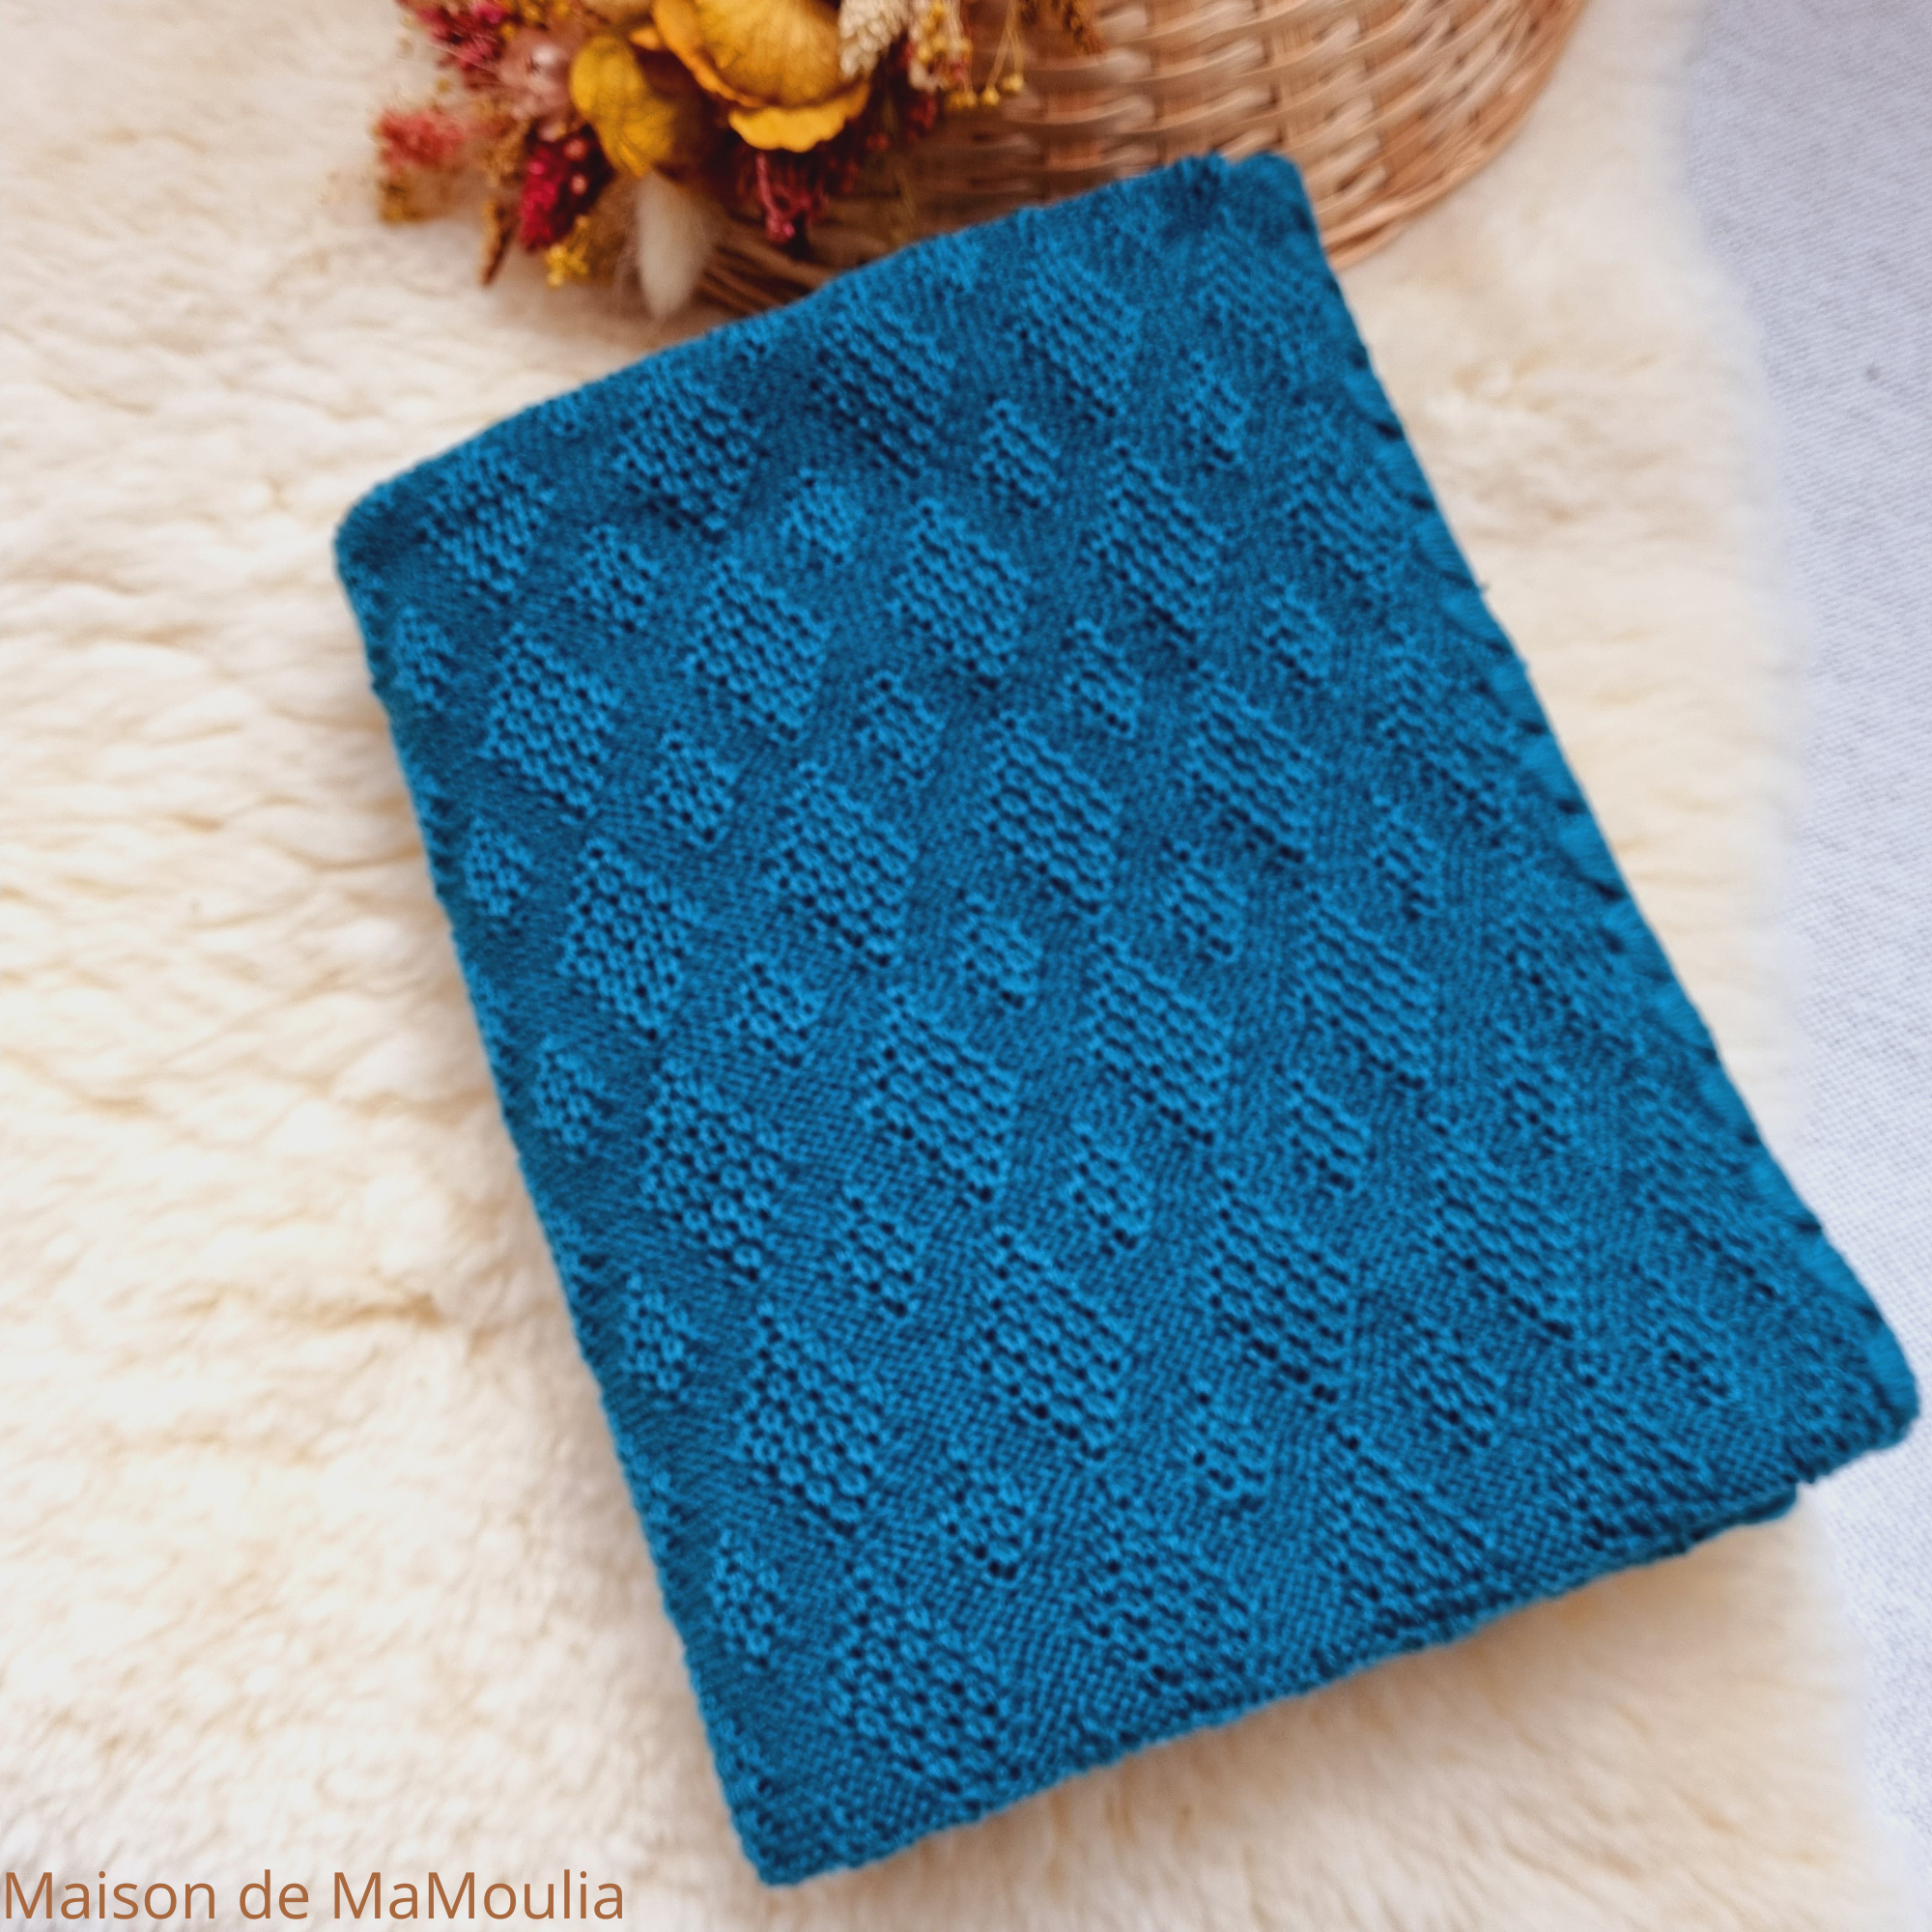 couverture-bebe-80-100-pure-laine-merinos-tricotée-disana-gots-maison-de-mamoulia -originale-pacific-bleu-petrole